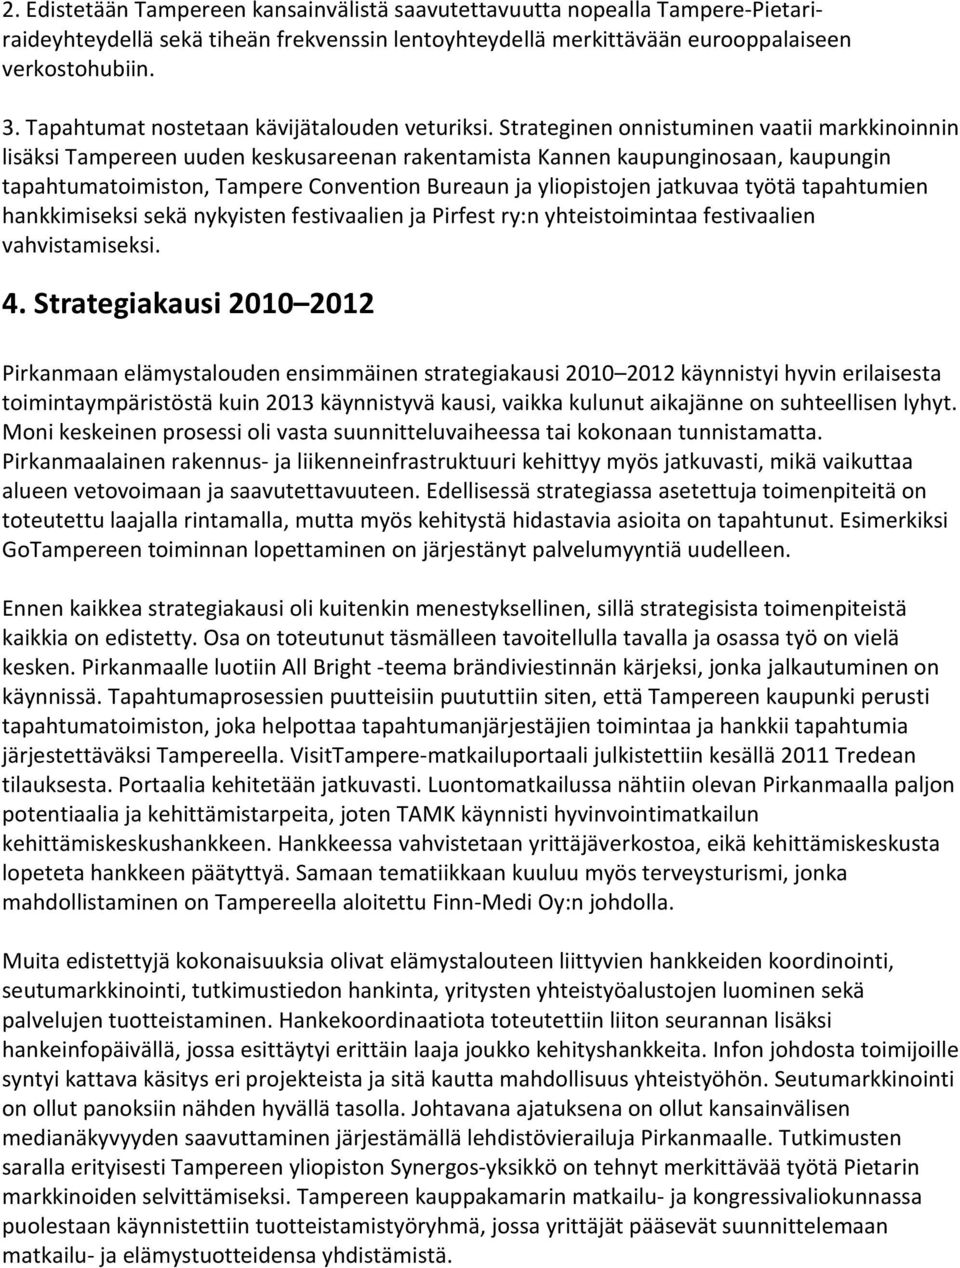 Strateginen onnistuminen vaatii markkinoinnin lisäksi Tampereen uuden keskusareenan rakentamista Kannen kaupunginosaan, kaupungin tapahtumatoimiston, Tampere Convention Bureaun ja yliopistojen